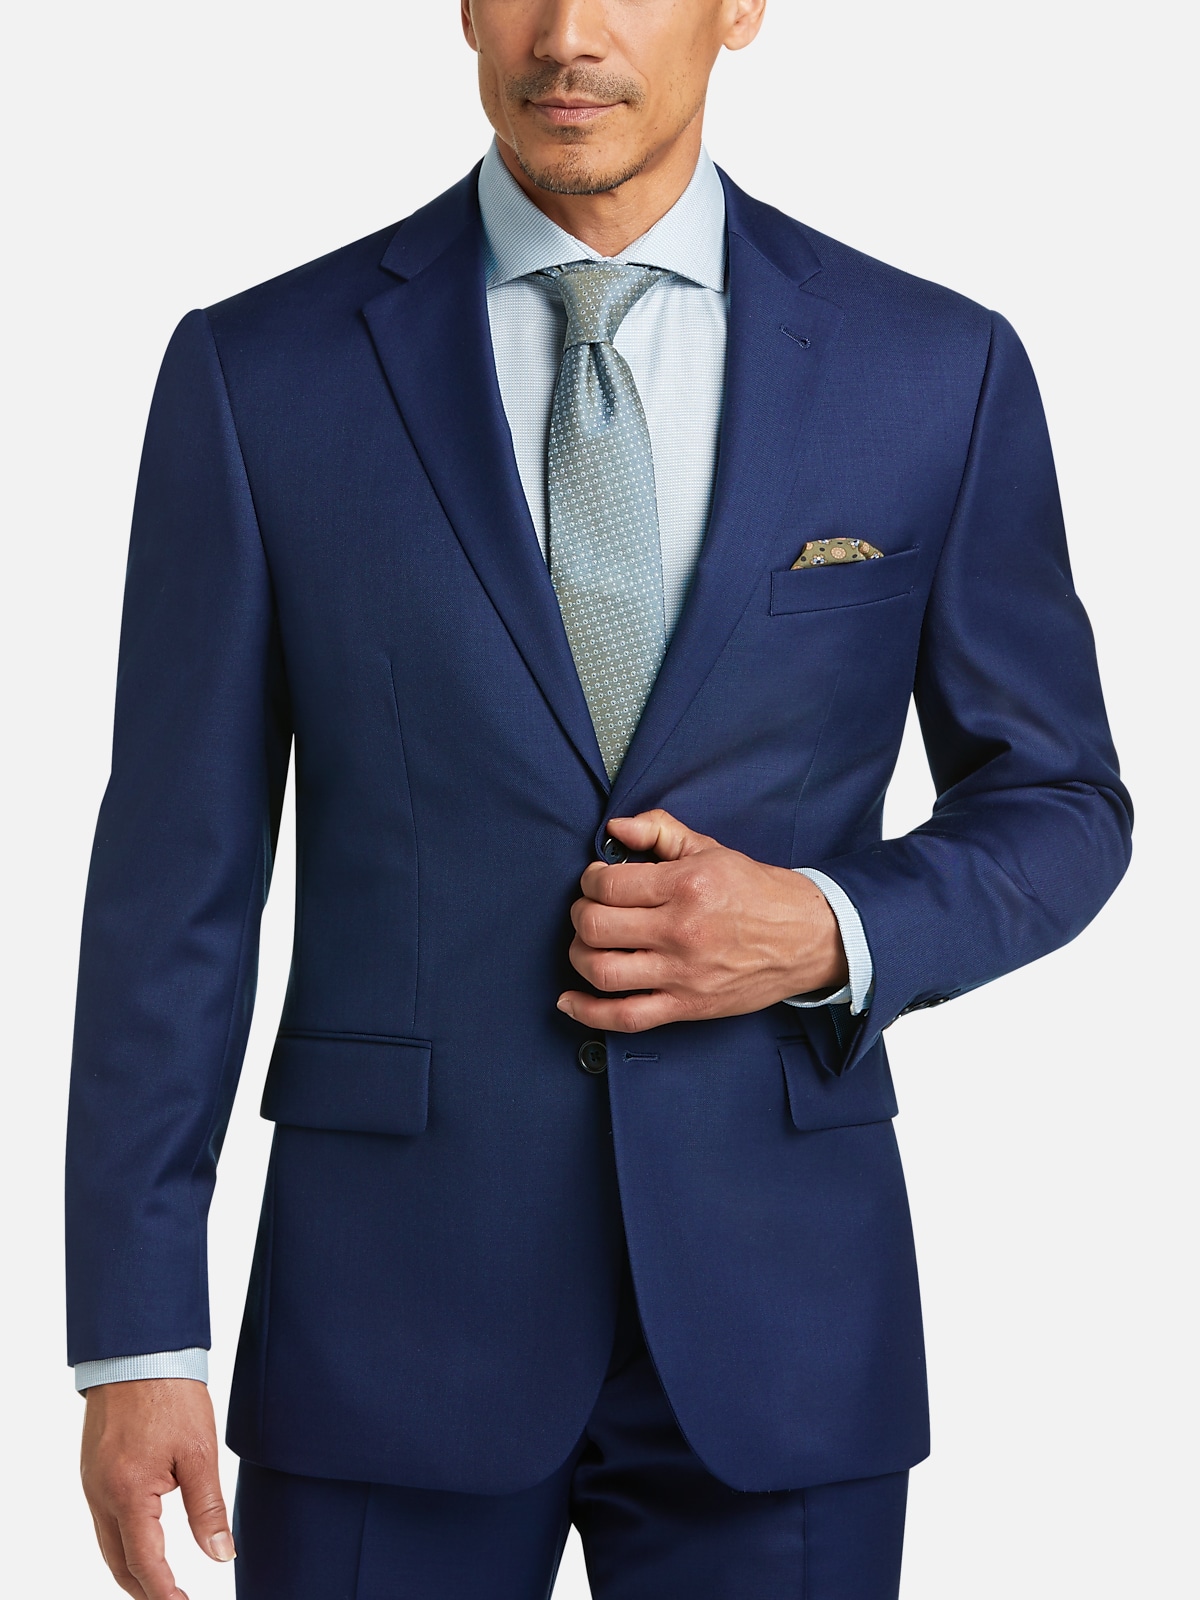 JOE Joseph Abboud Bright Classic Fit Suit | All Sale| Men's Wearhouse